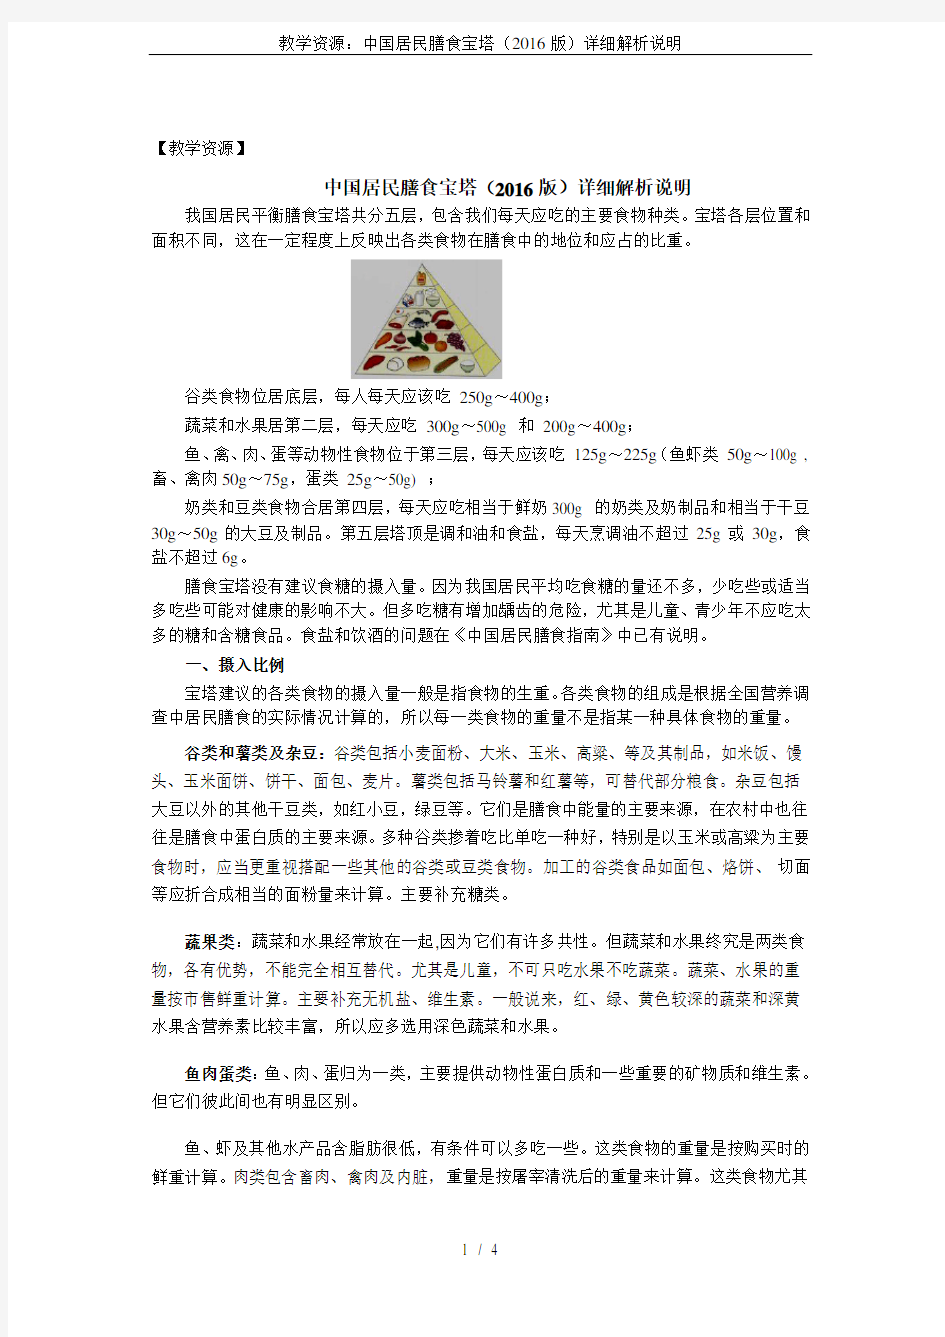 教学资源：中国居民膳食宝塔(2016版)详细解析说明